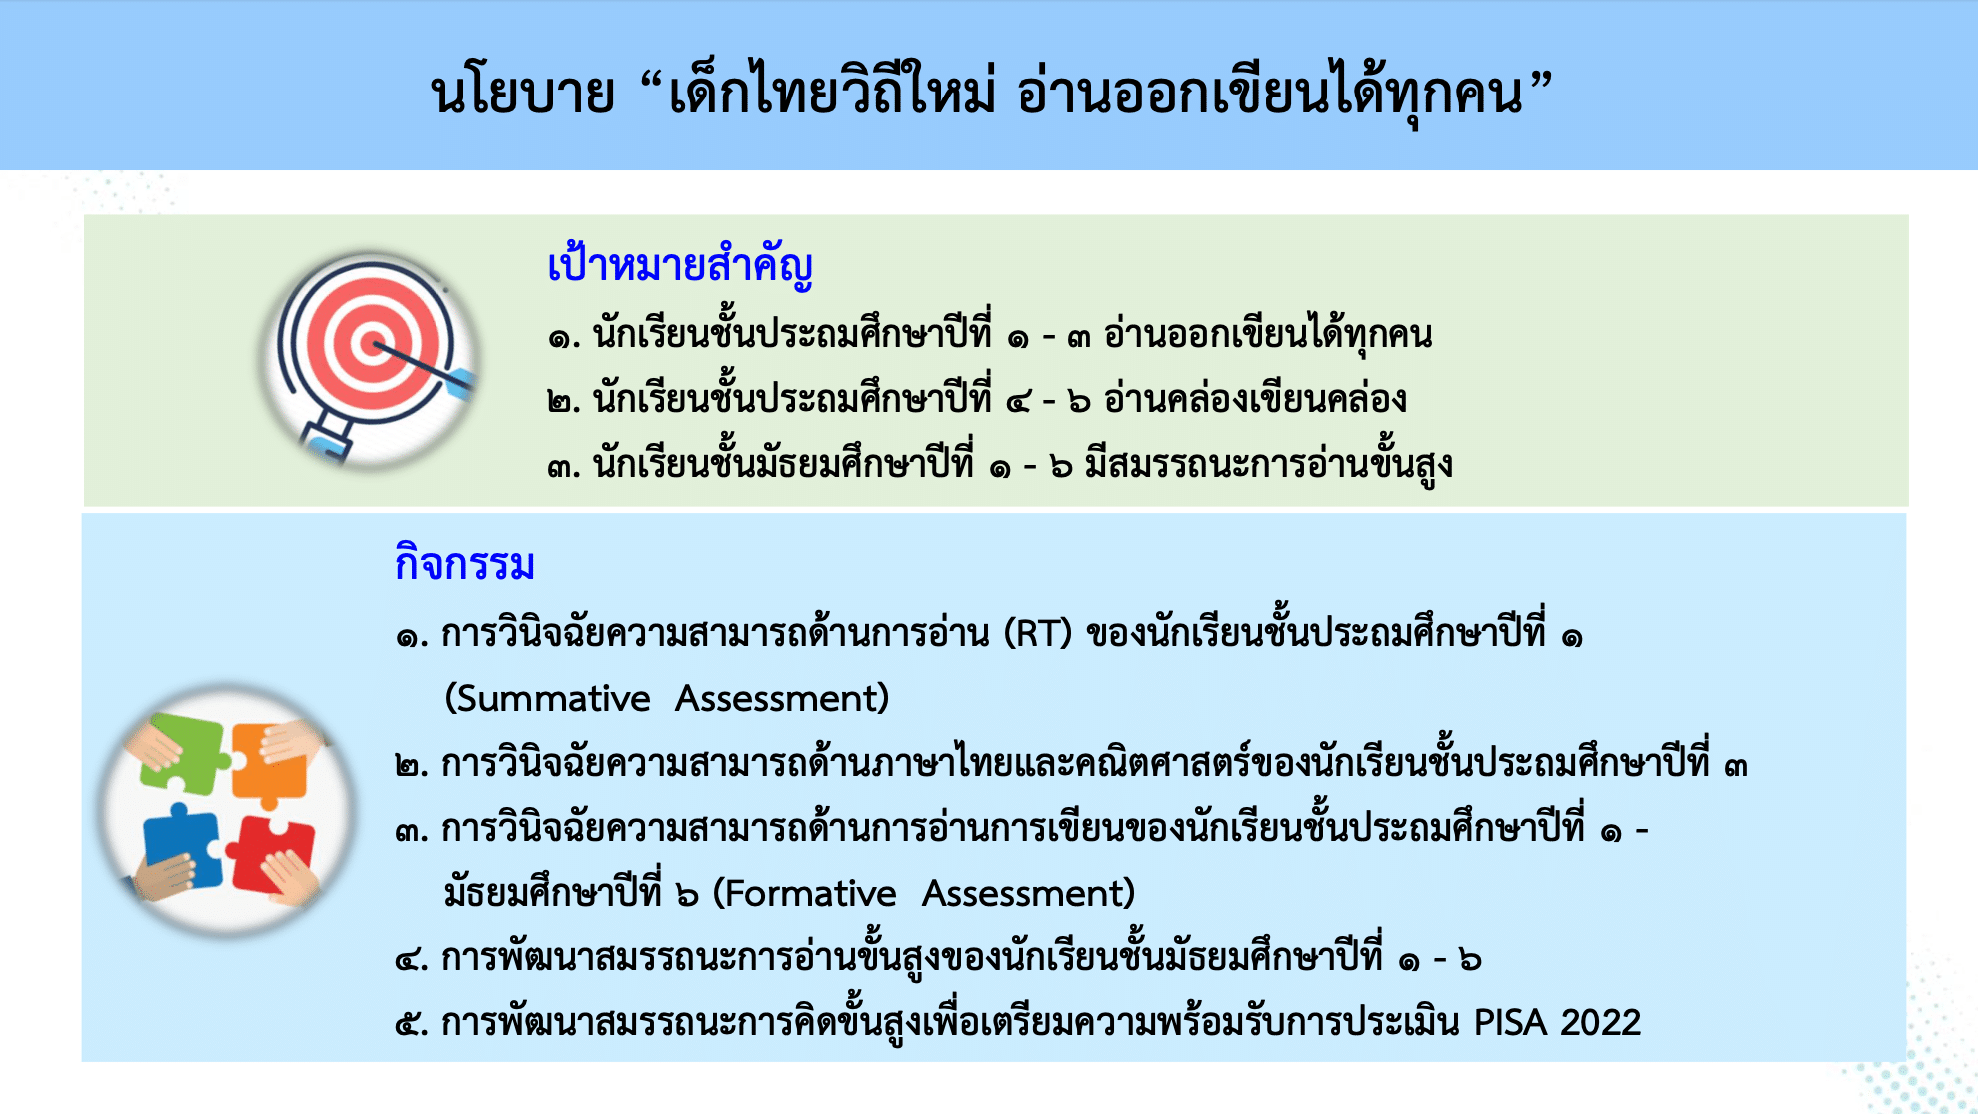 นโยบาย “เด็กไทยวิถีใหม่ อ่านออกเขียนได้ทุกคน”